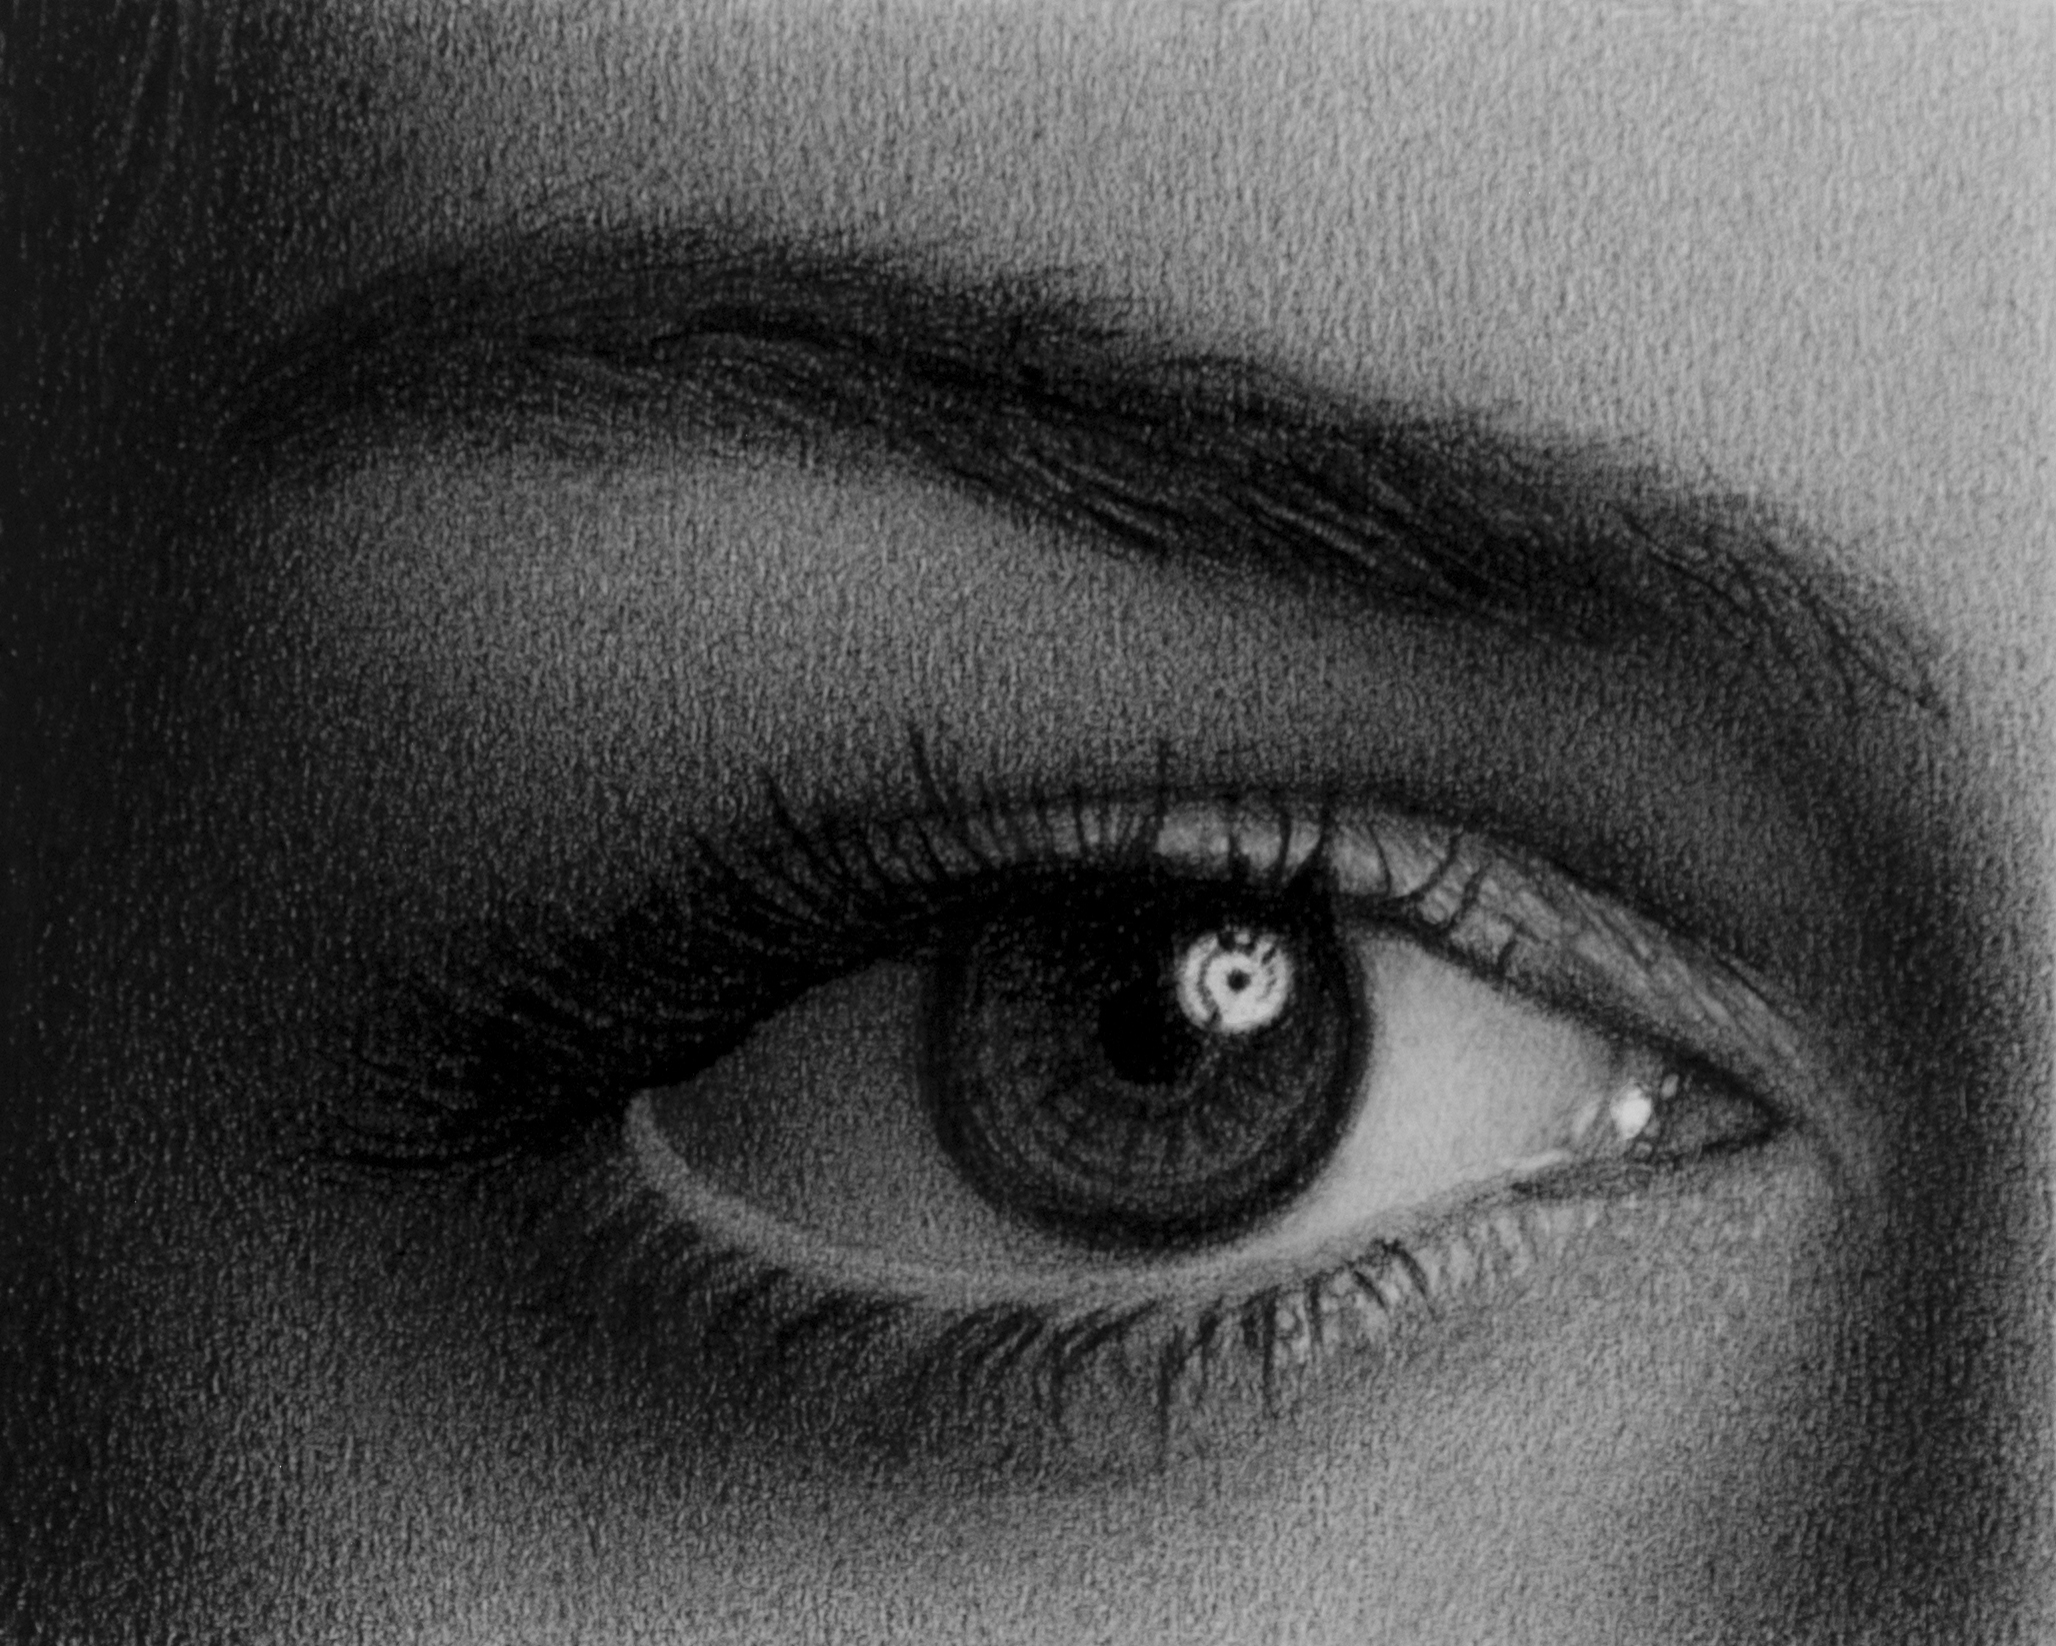 realistic female eye sketch